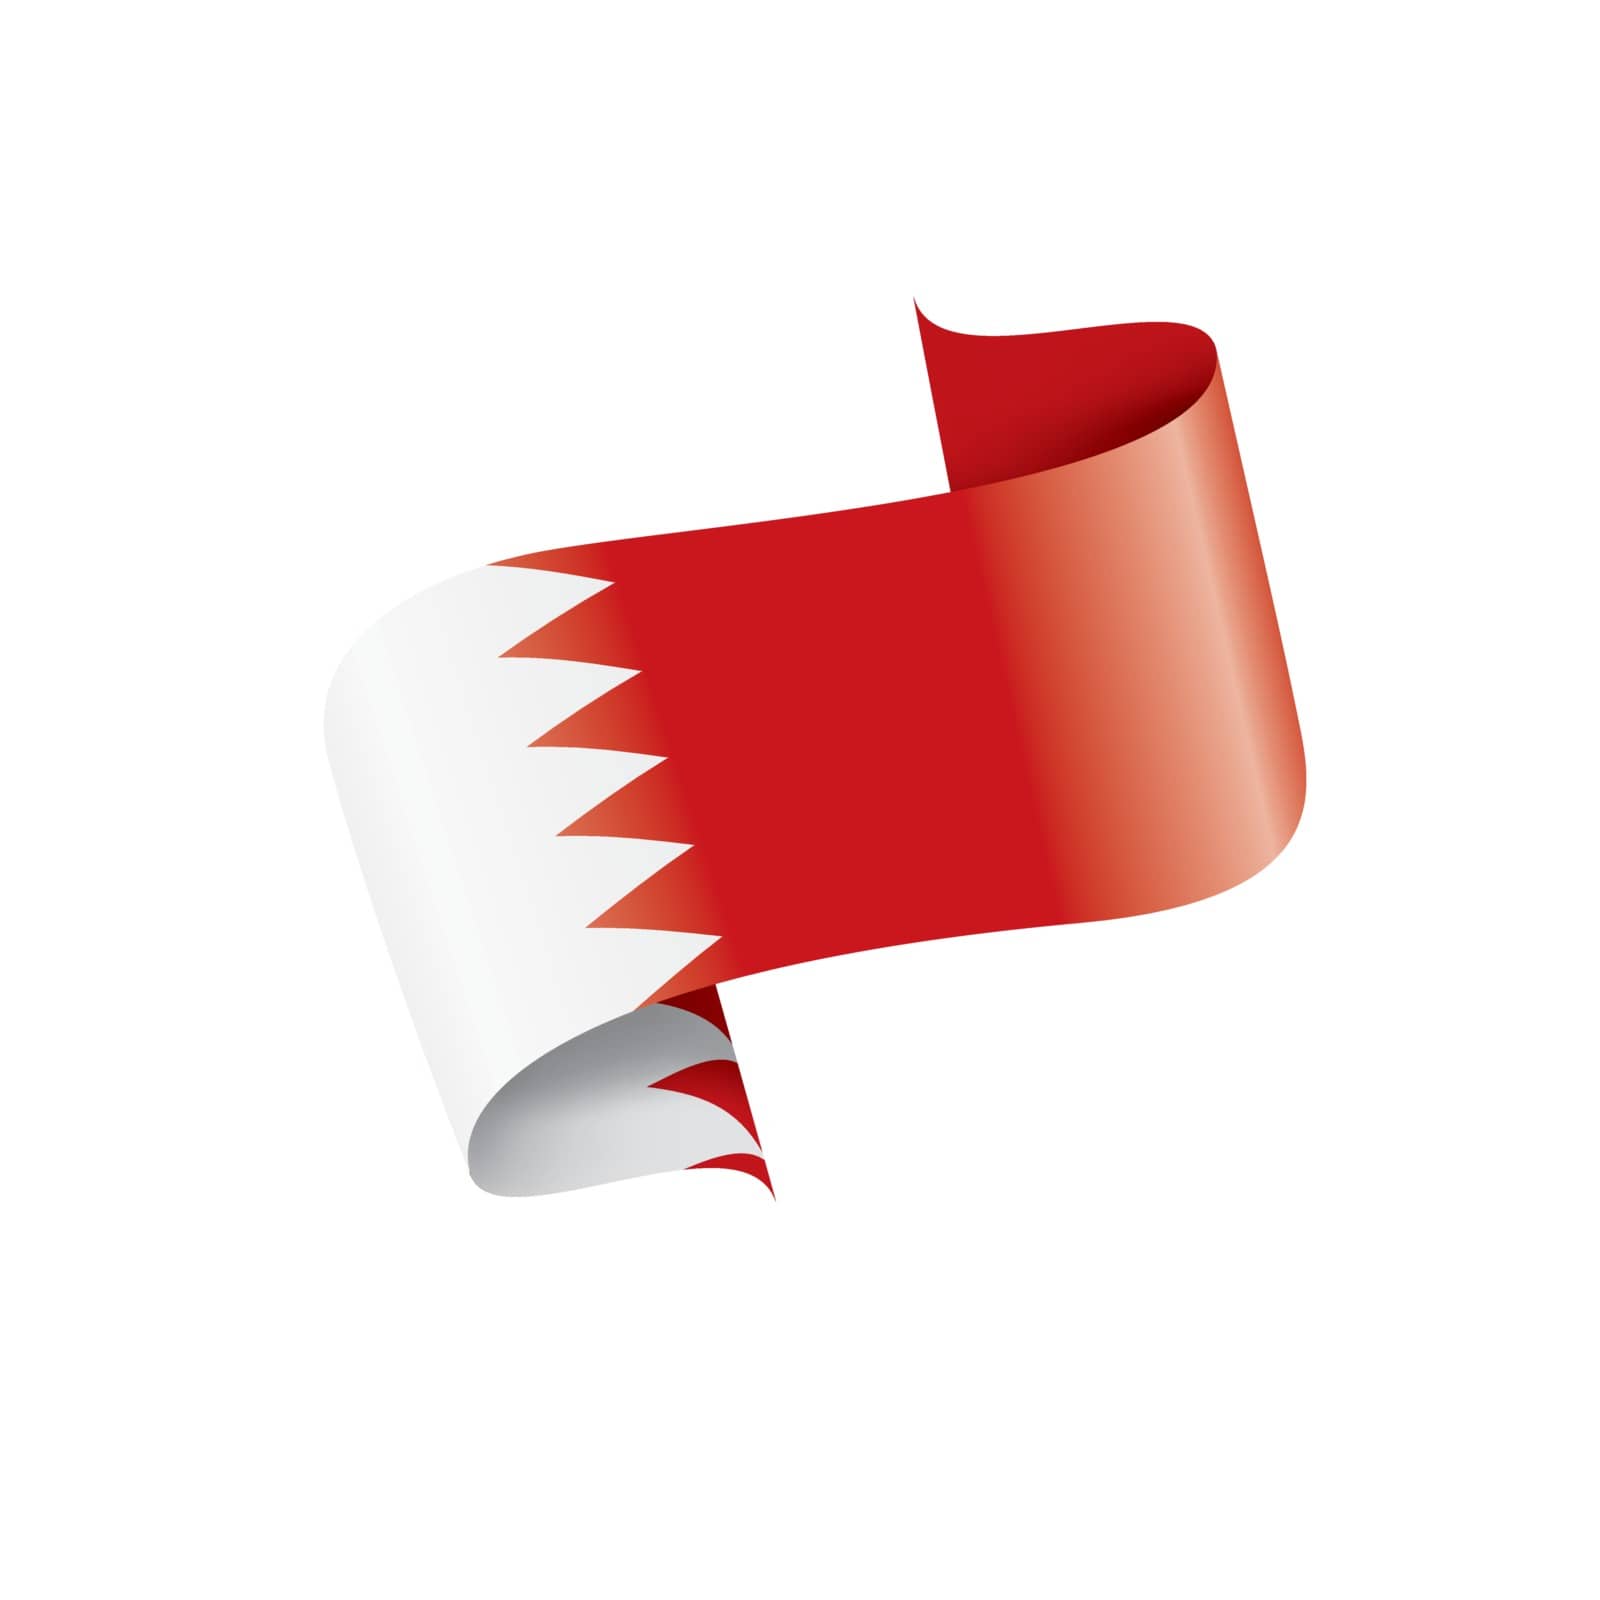 Bahrain flag, vector illustration on a white background.